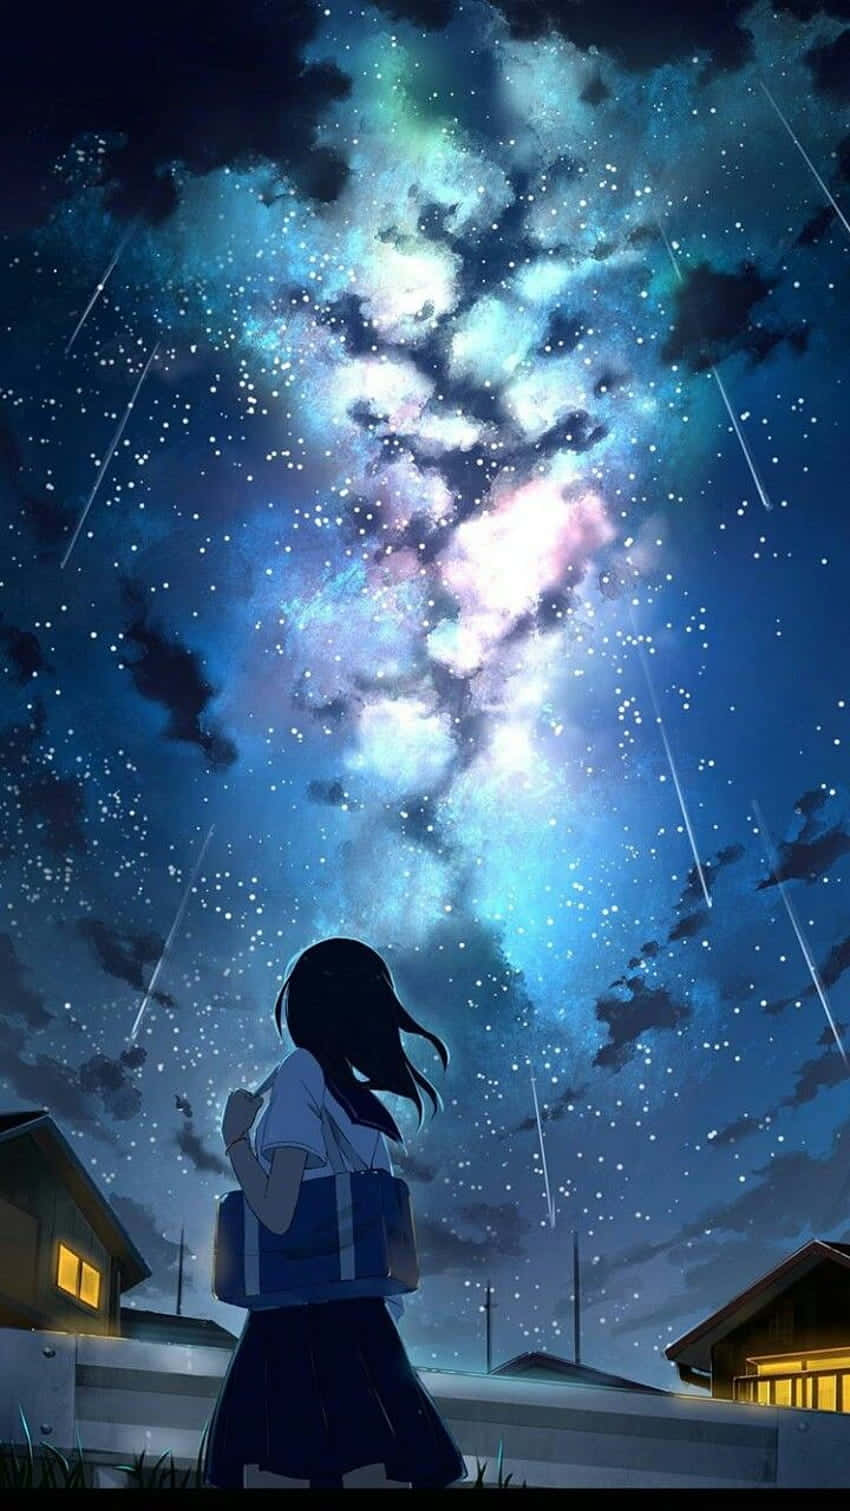 Cieloiluminado Con Estrellas Noche Anime. Fondo de pantalla